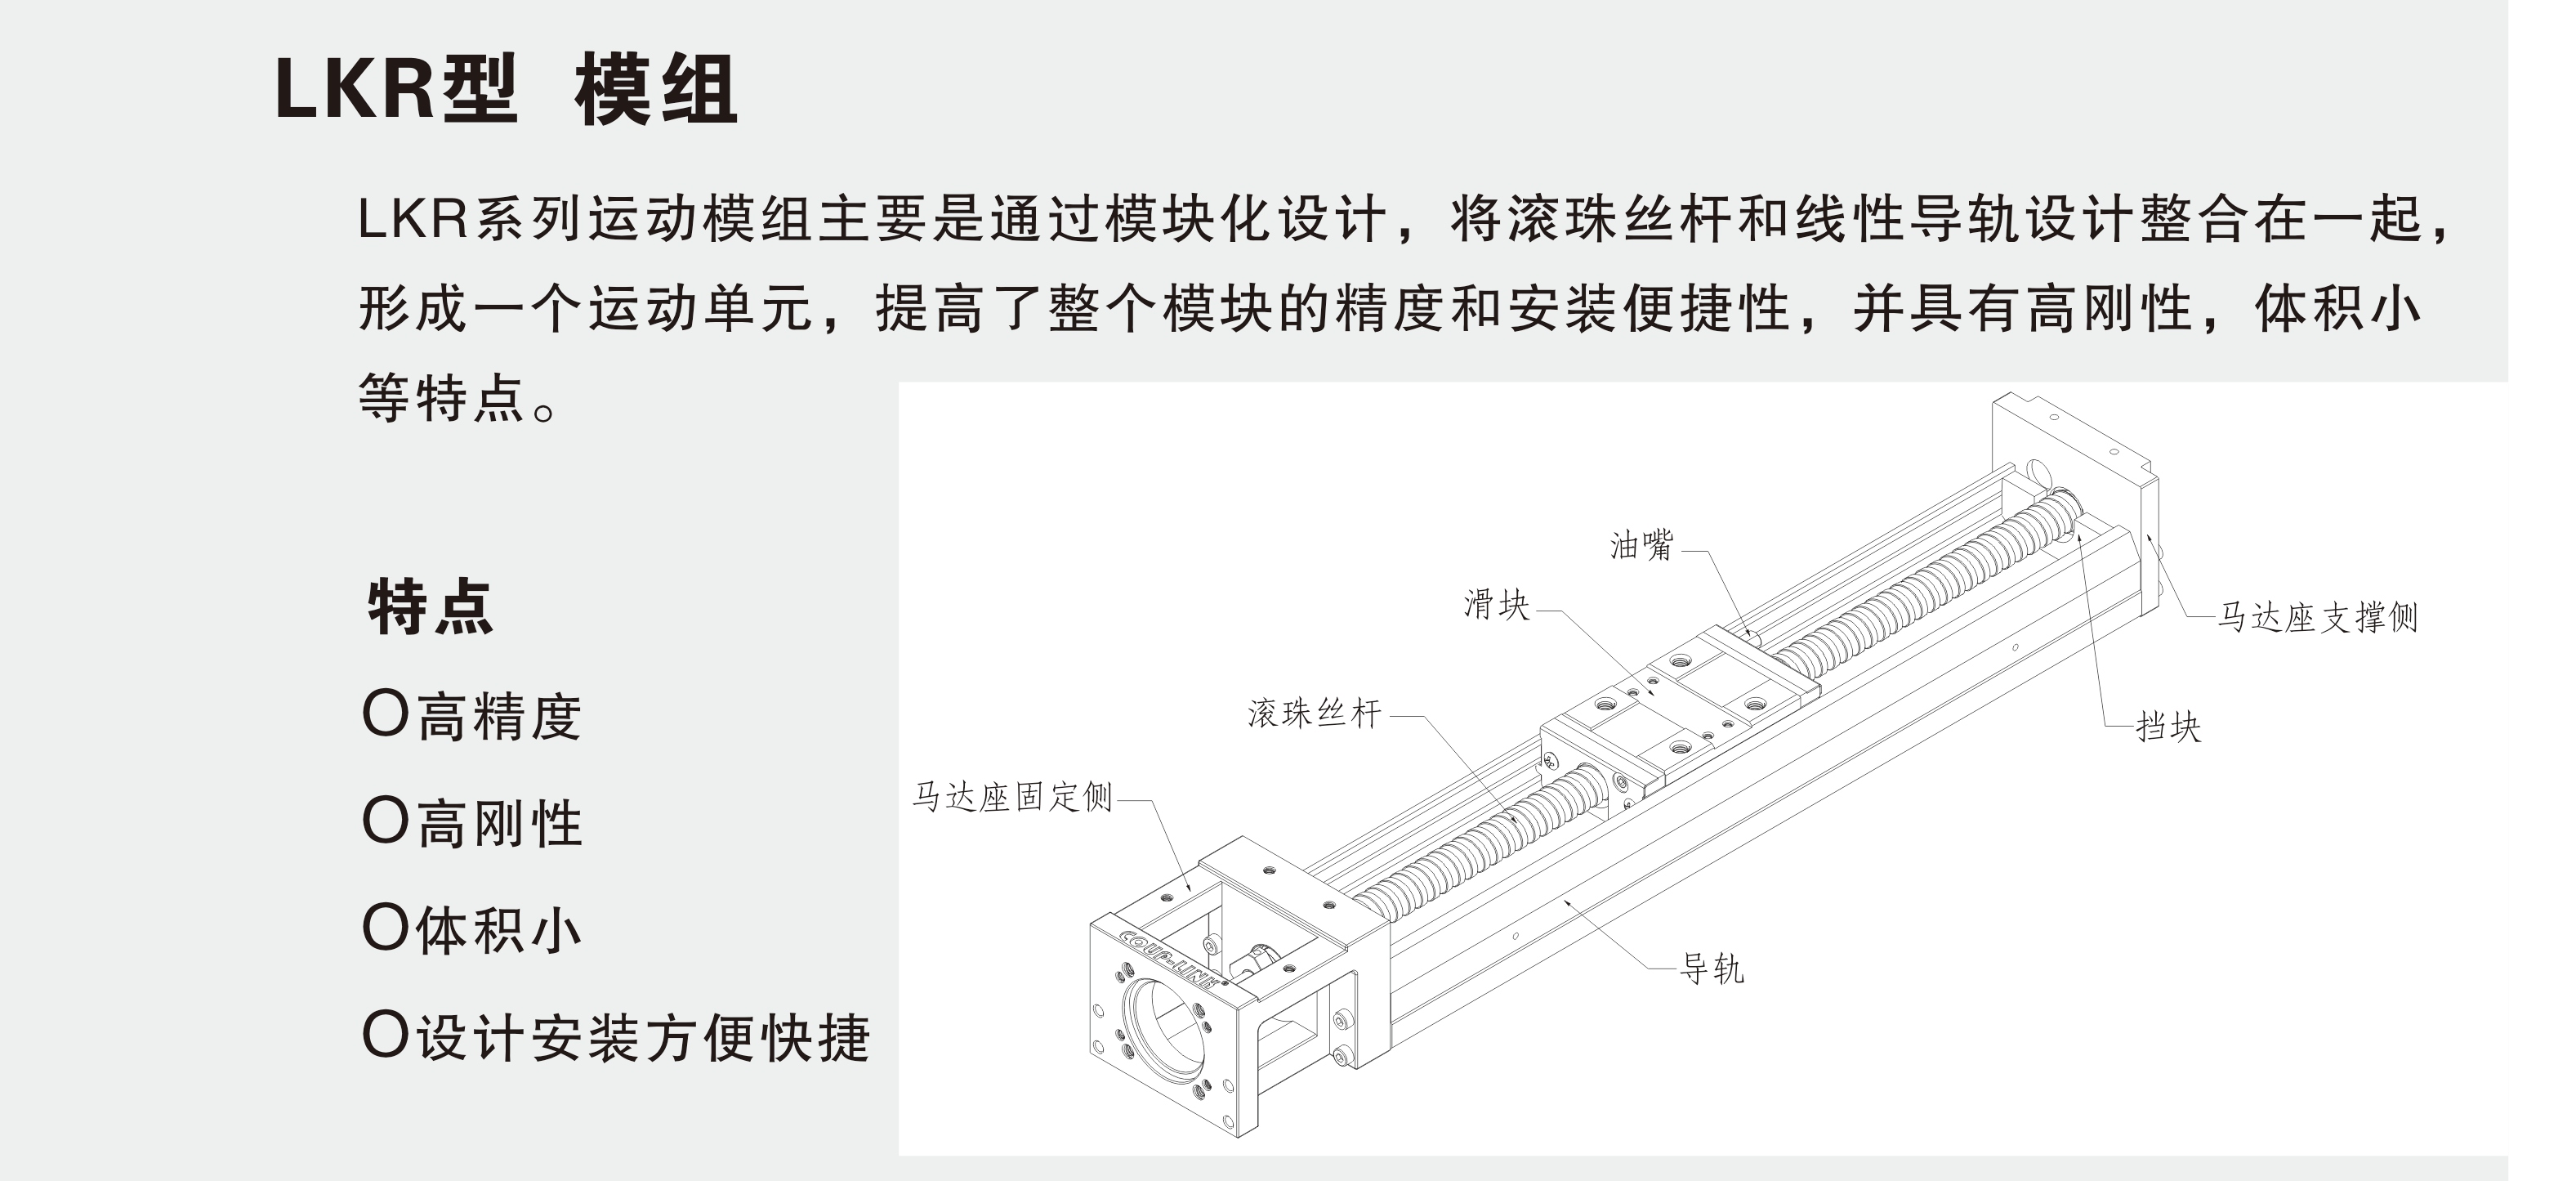 LKR50 (不含护盖系列)_联轴器种类-广州菱科自动化设备有限公司